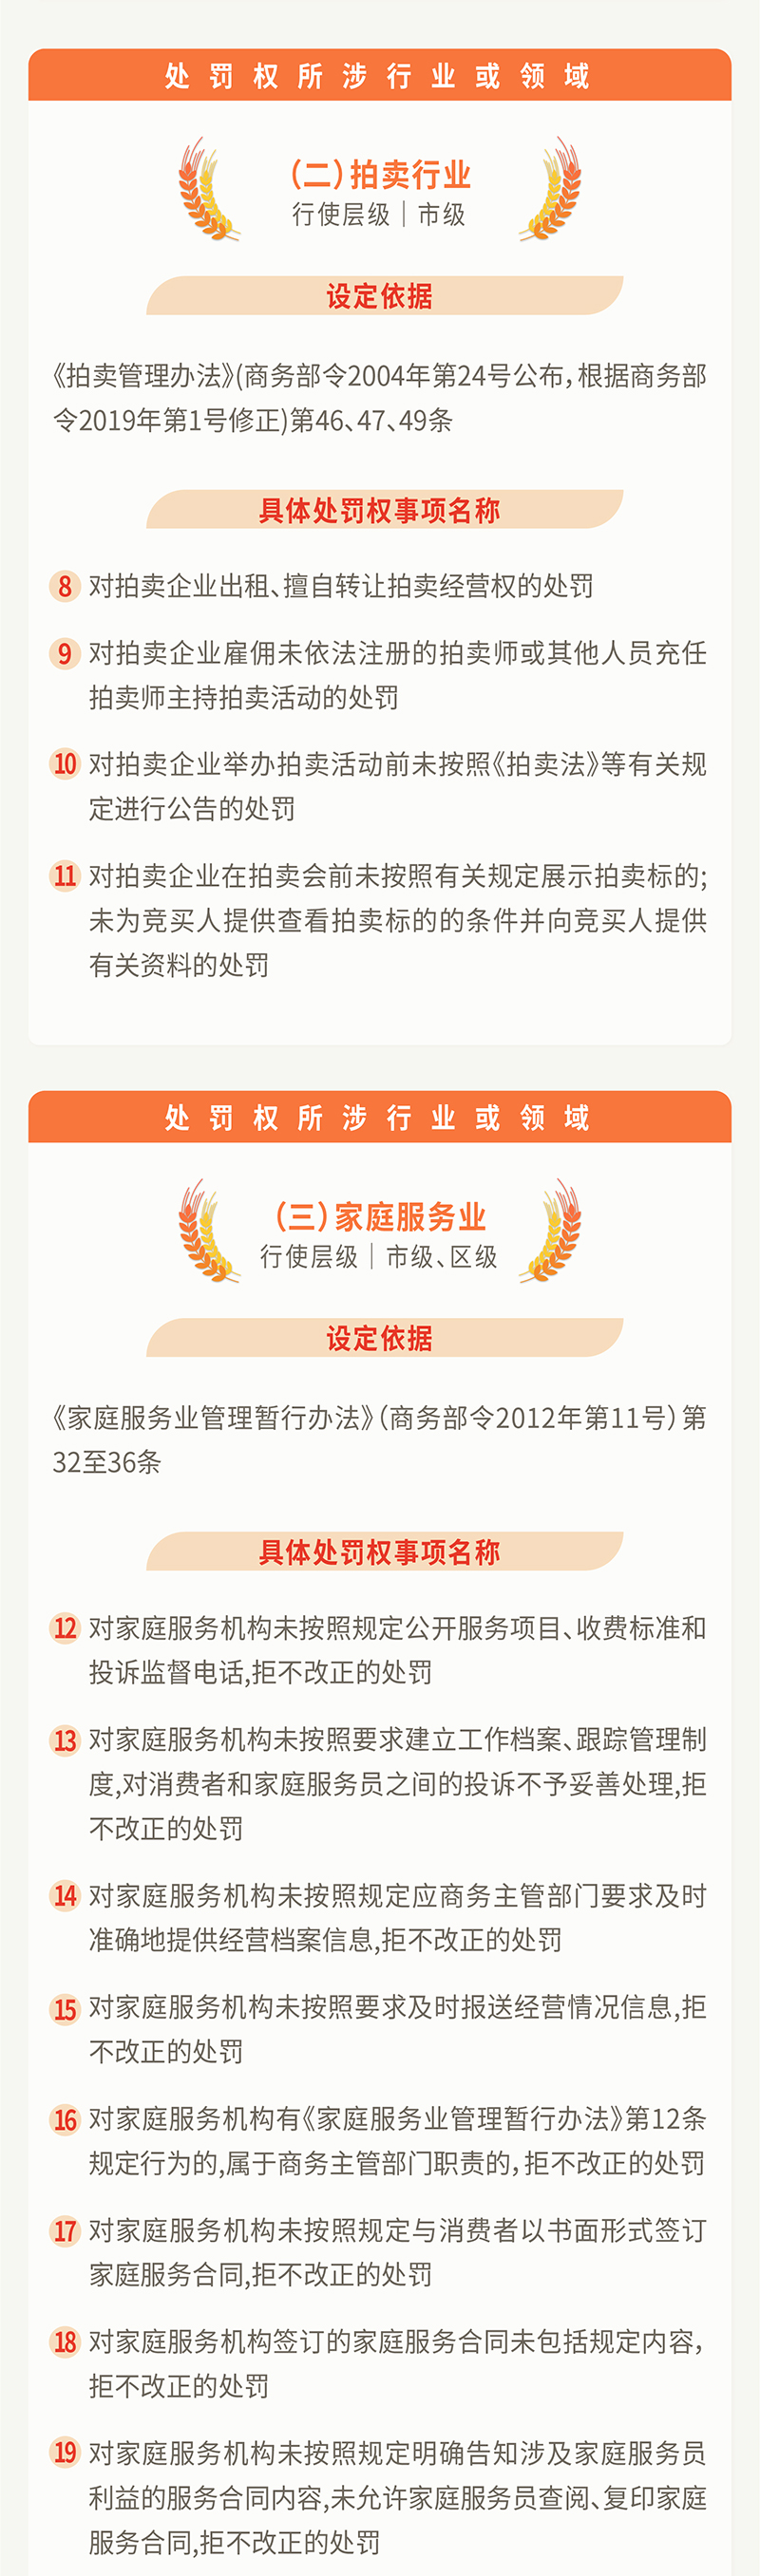 20210105中国上海图表-05.jpg